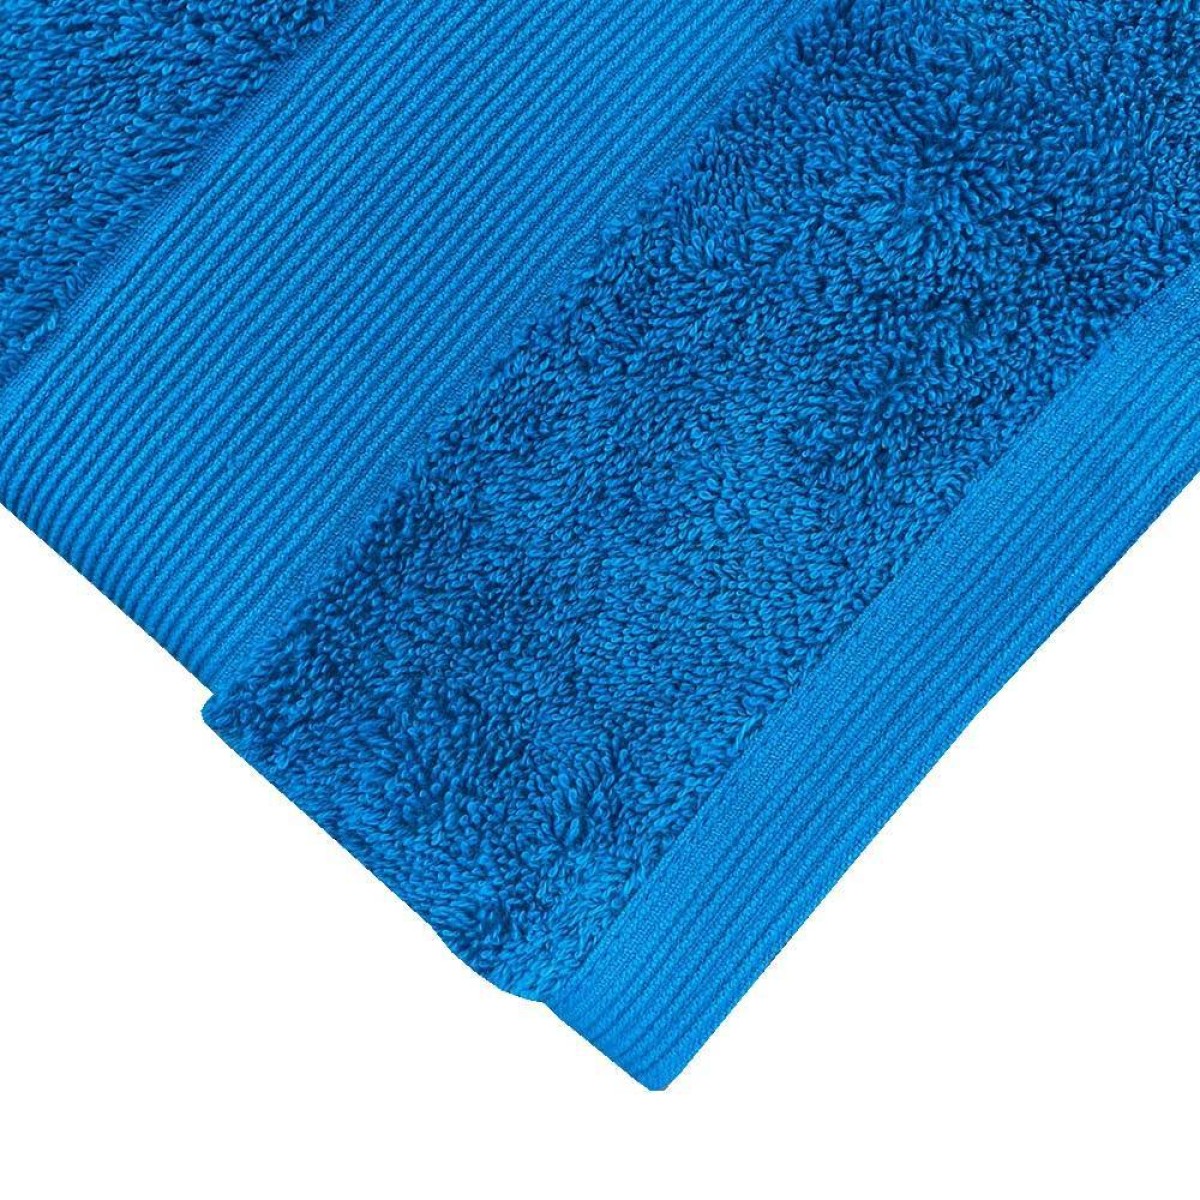 Πετσέτα Προσώπου 600grs (50x90) 100% Βαμβάκι με μπορντούρα με ανάγλυφες ρίγες οινοπνευματί χρώμα TNS 39-950-0414-4